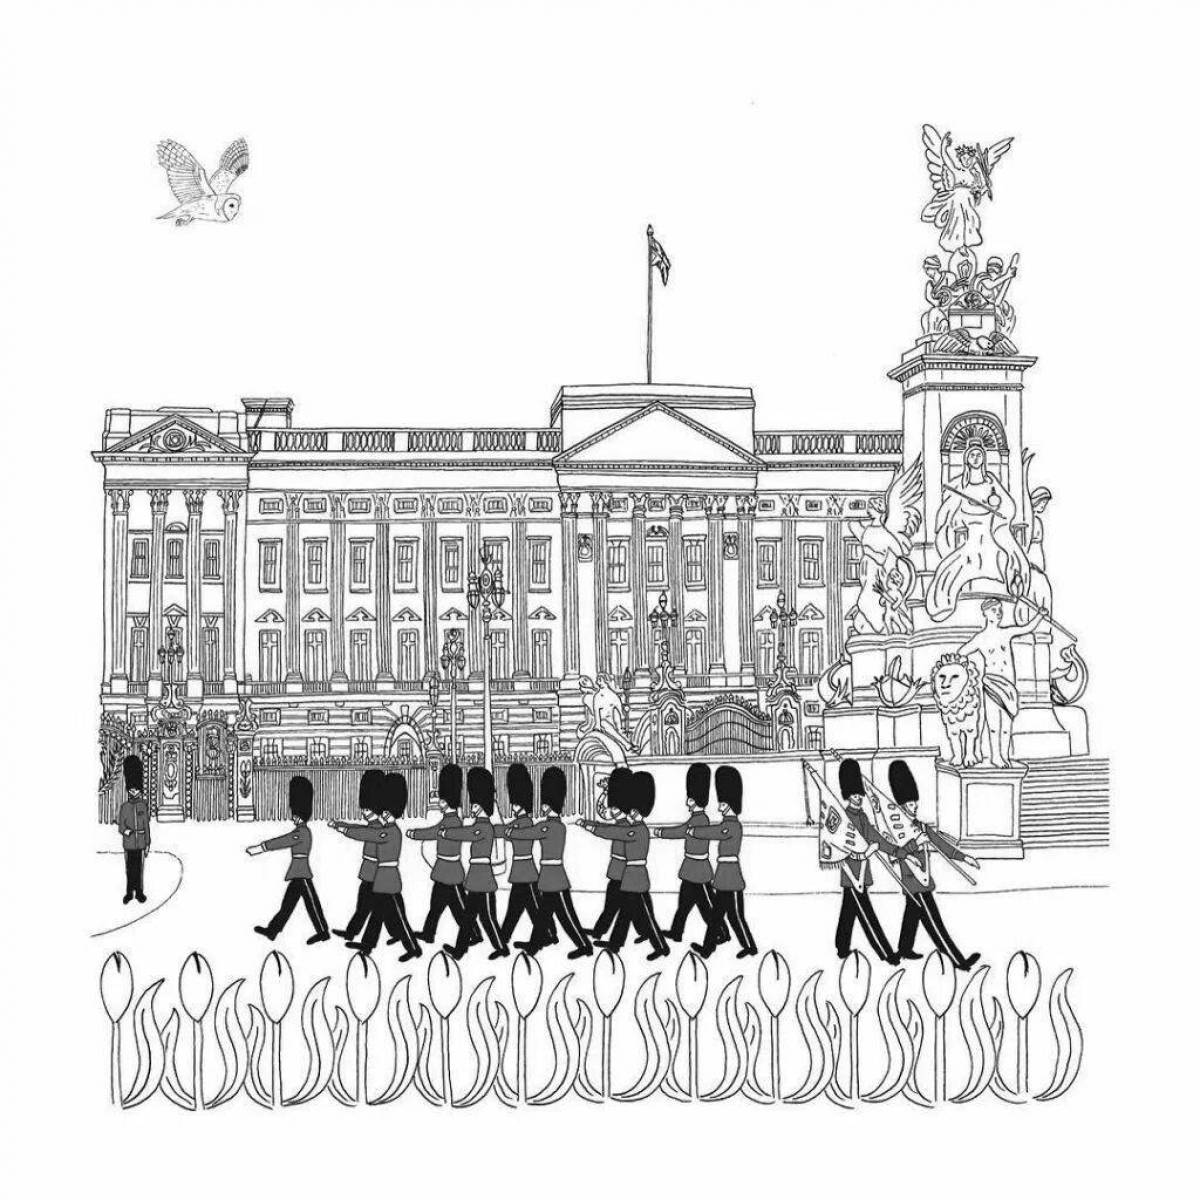 Buckingham palace #5